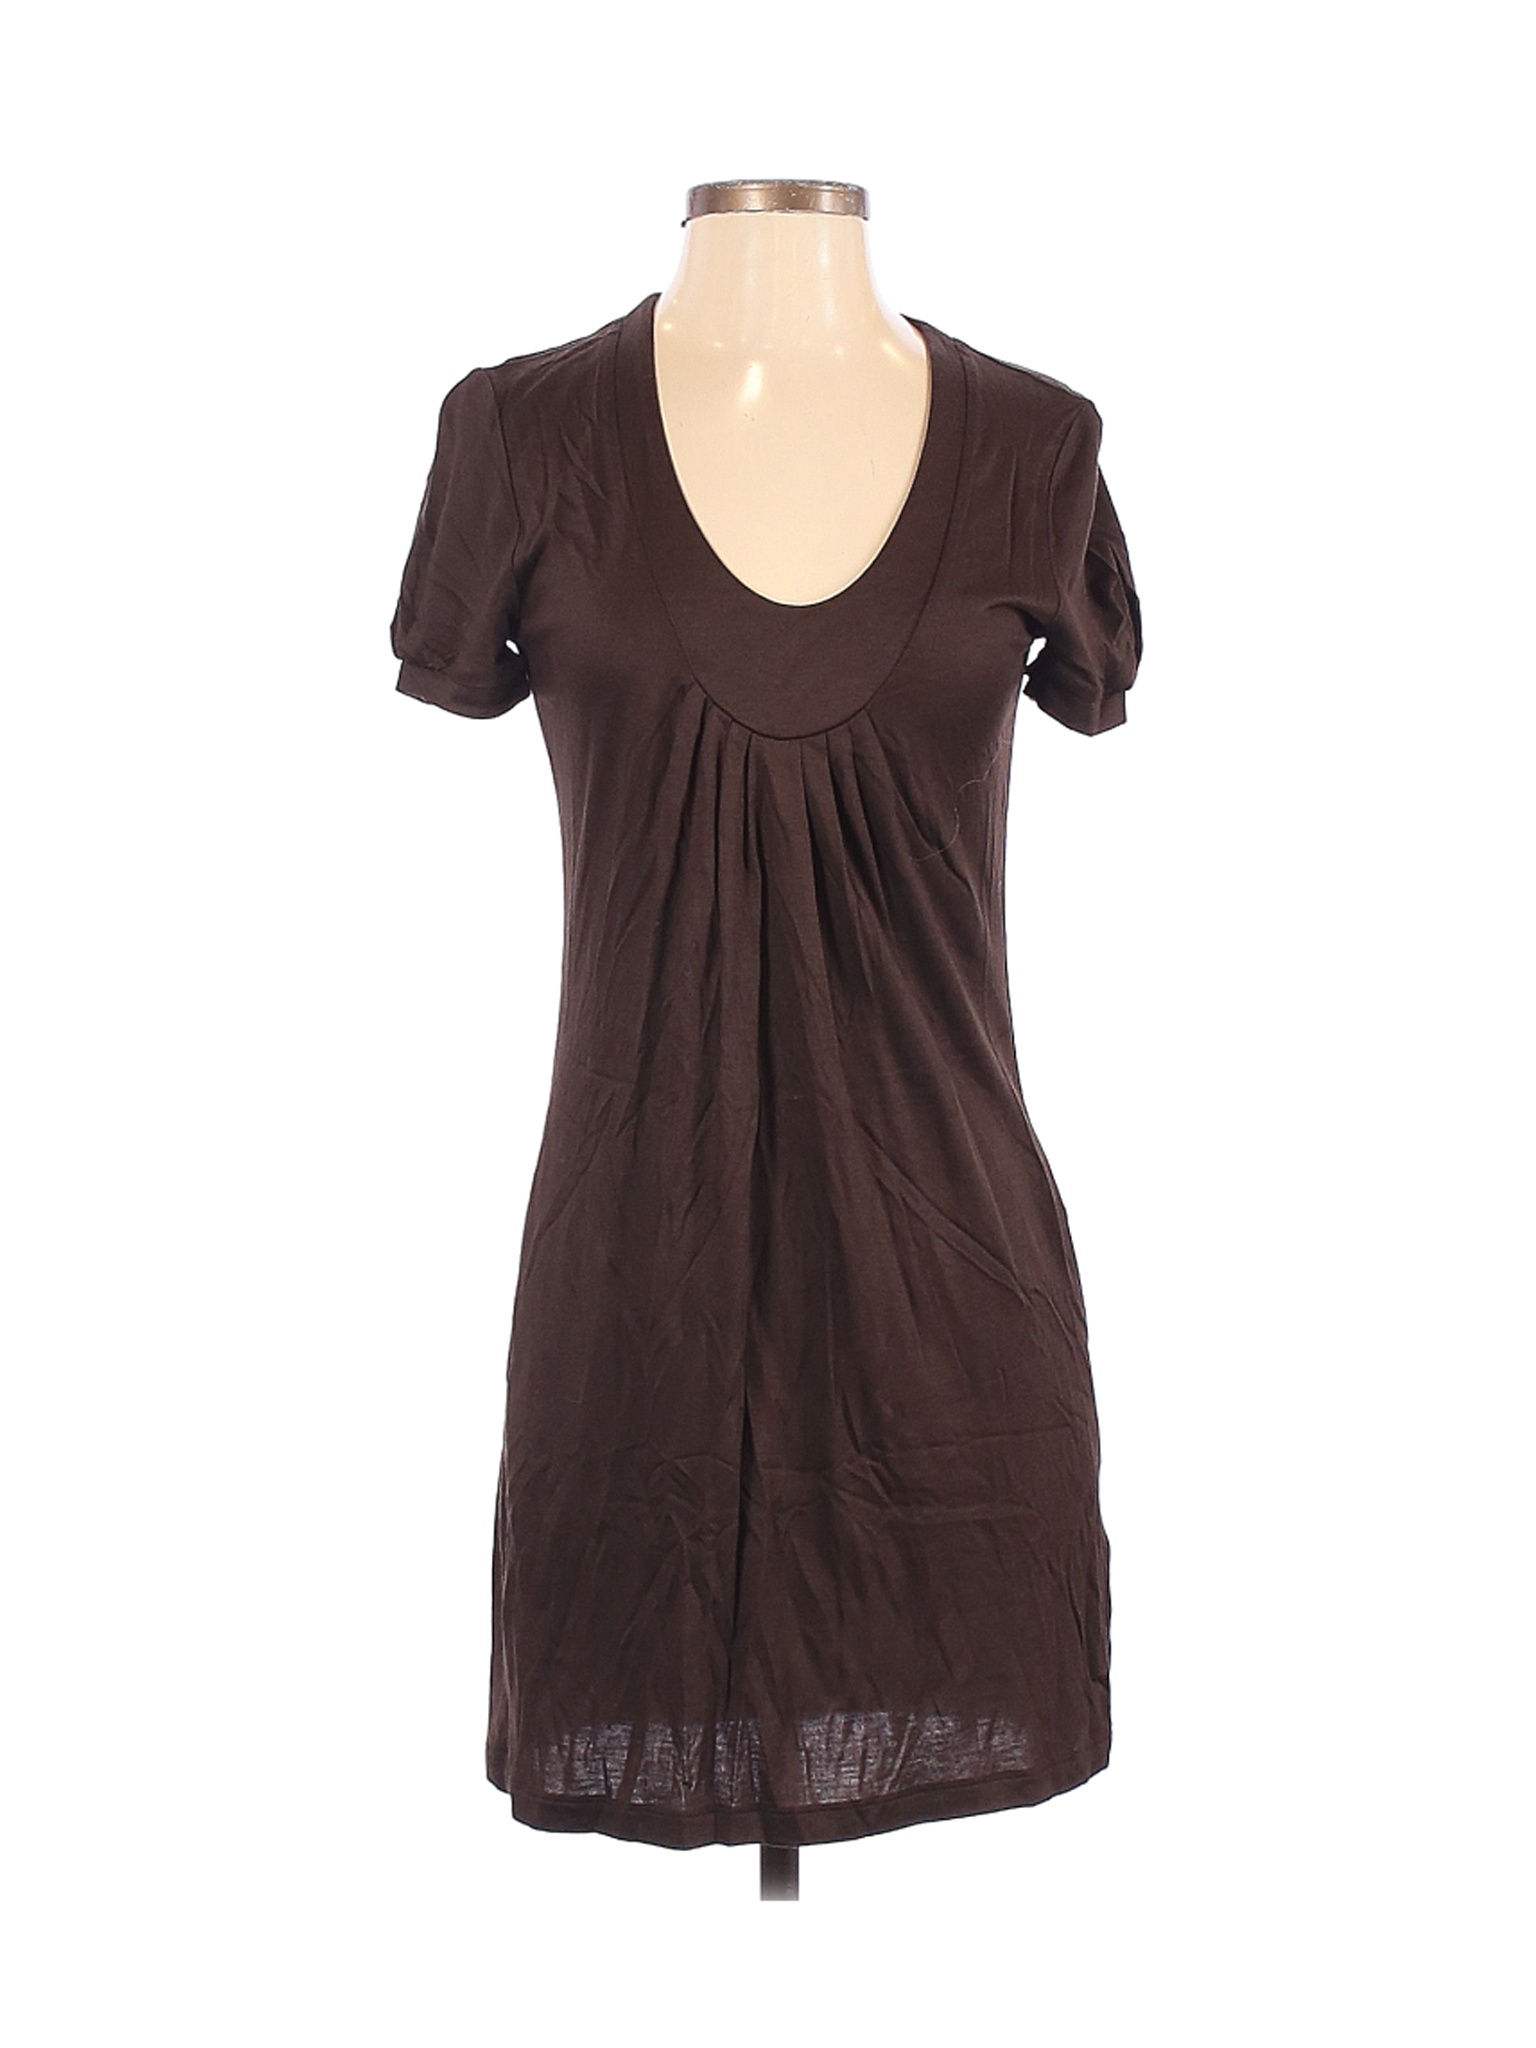 Banana Republic Women Brown Casual Dress XS | eBay